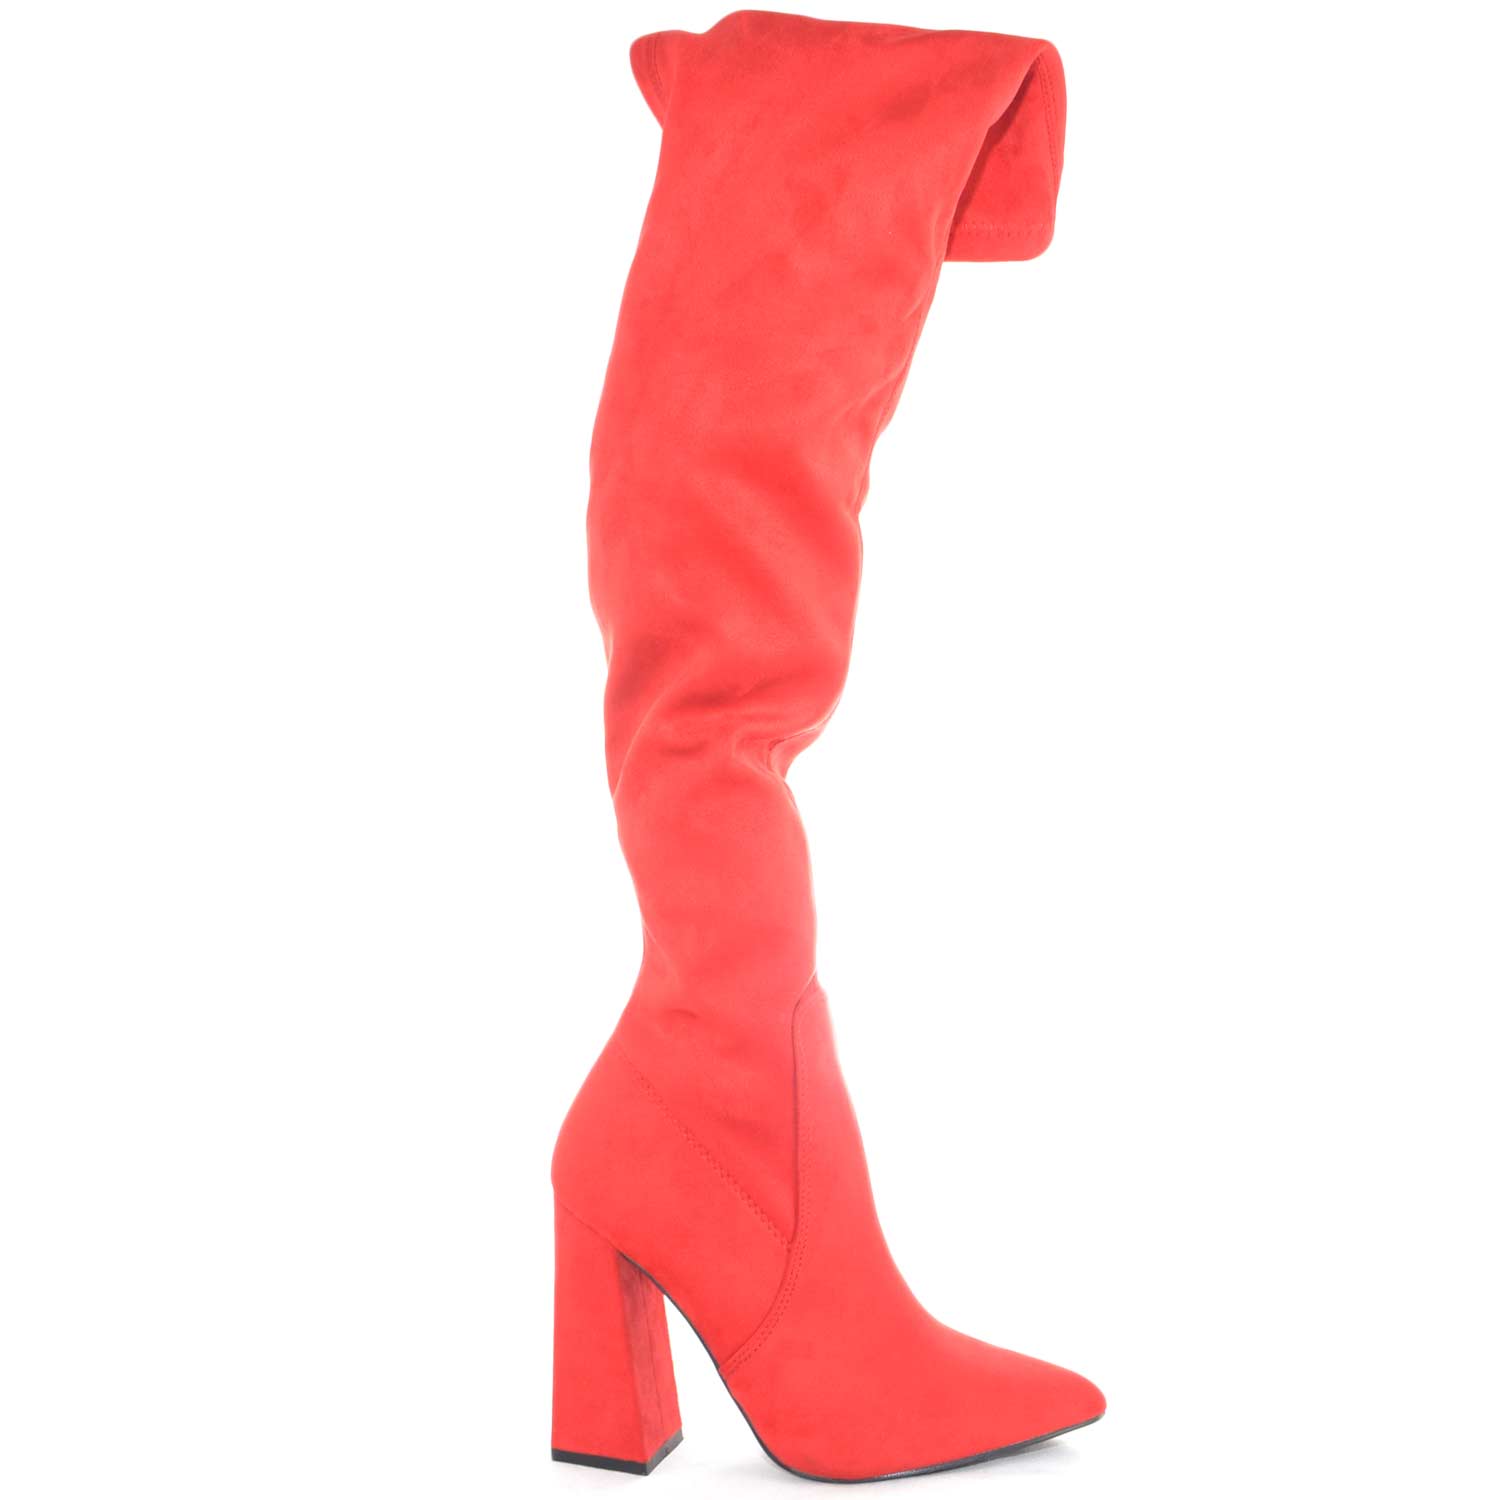 Scarpe donna stivali donna alti sopra ginocchio in camoscio rosso elastici zip modellanti a punta tacco largo